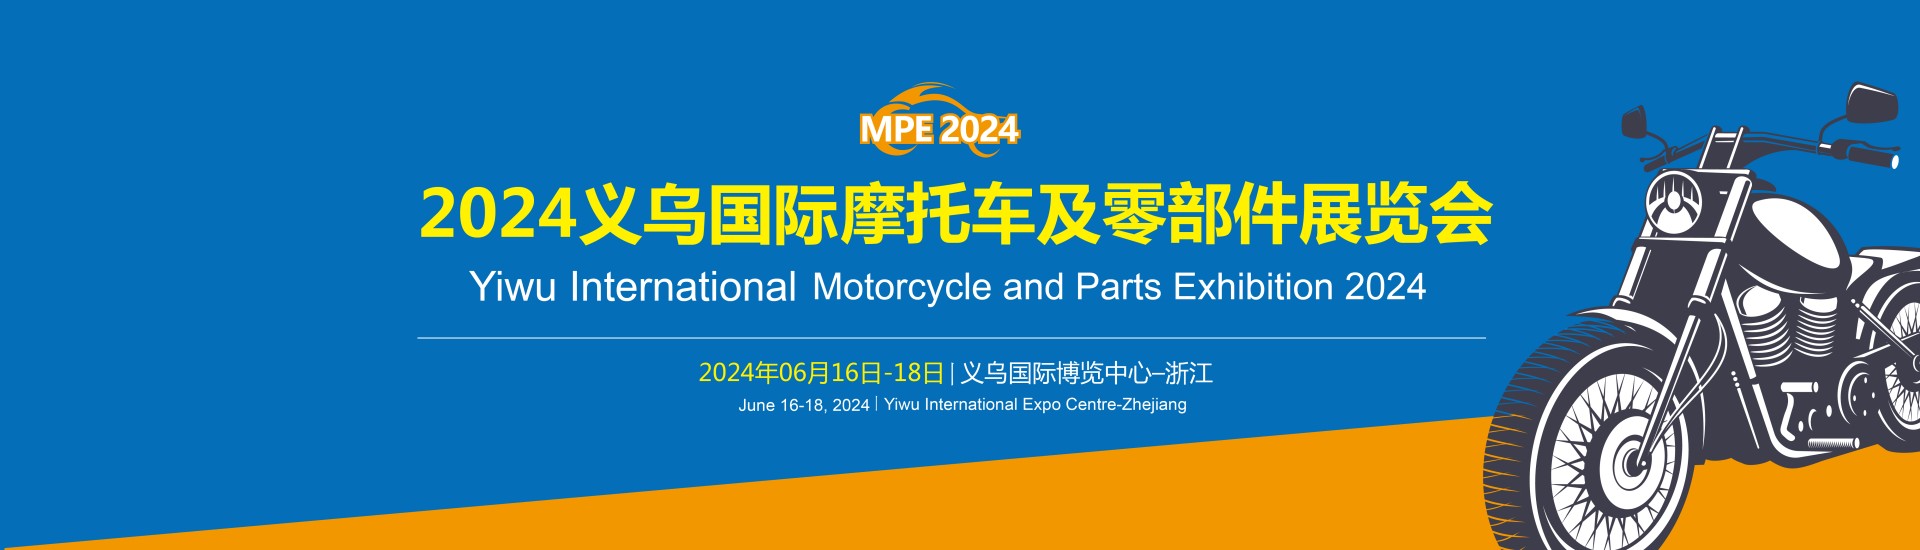 2024義烏國際摩托車(chē)及零部件展覽會